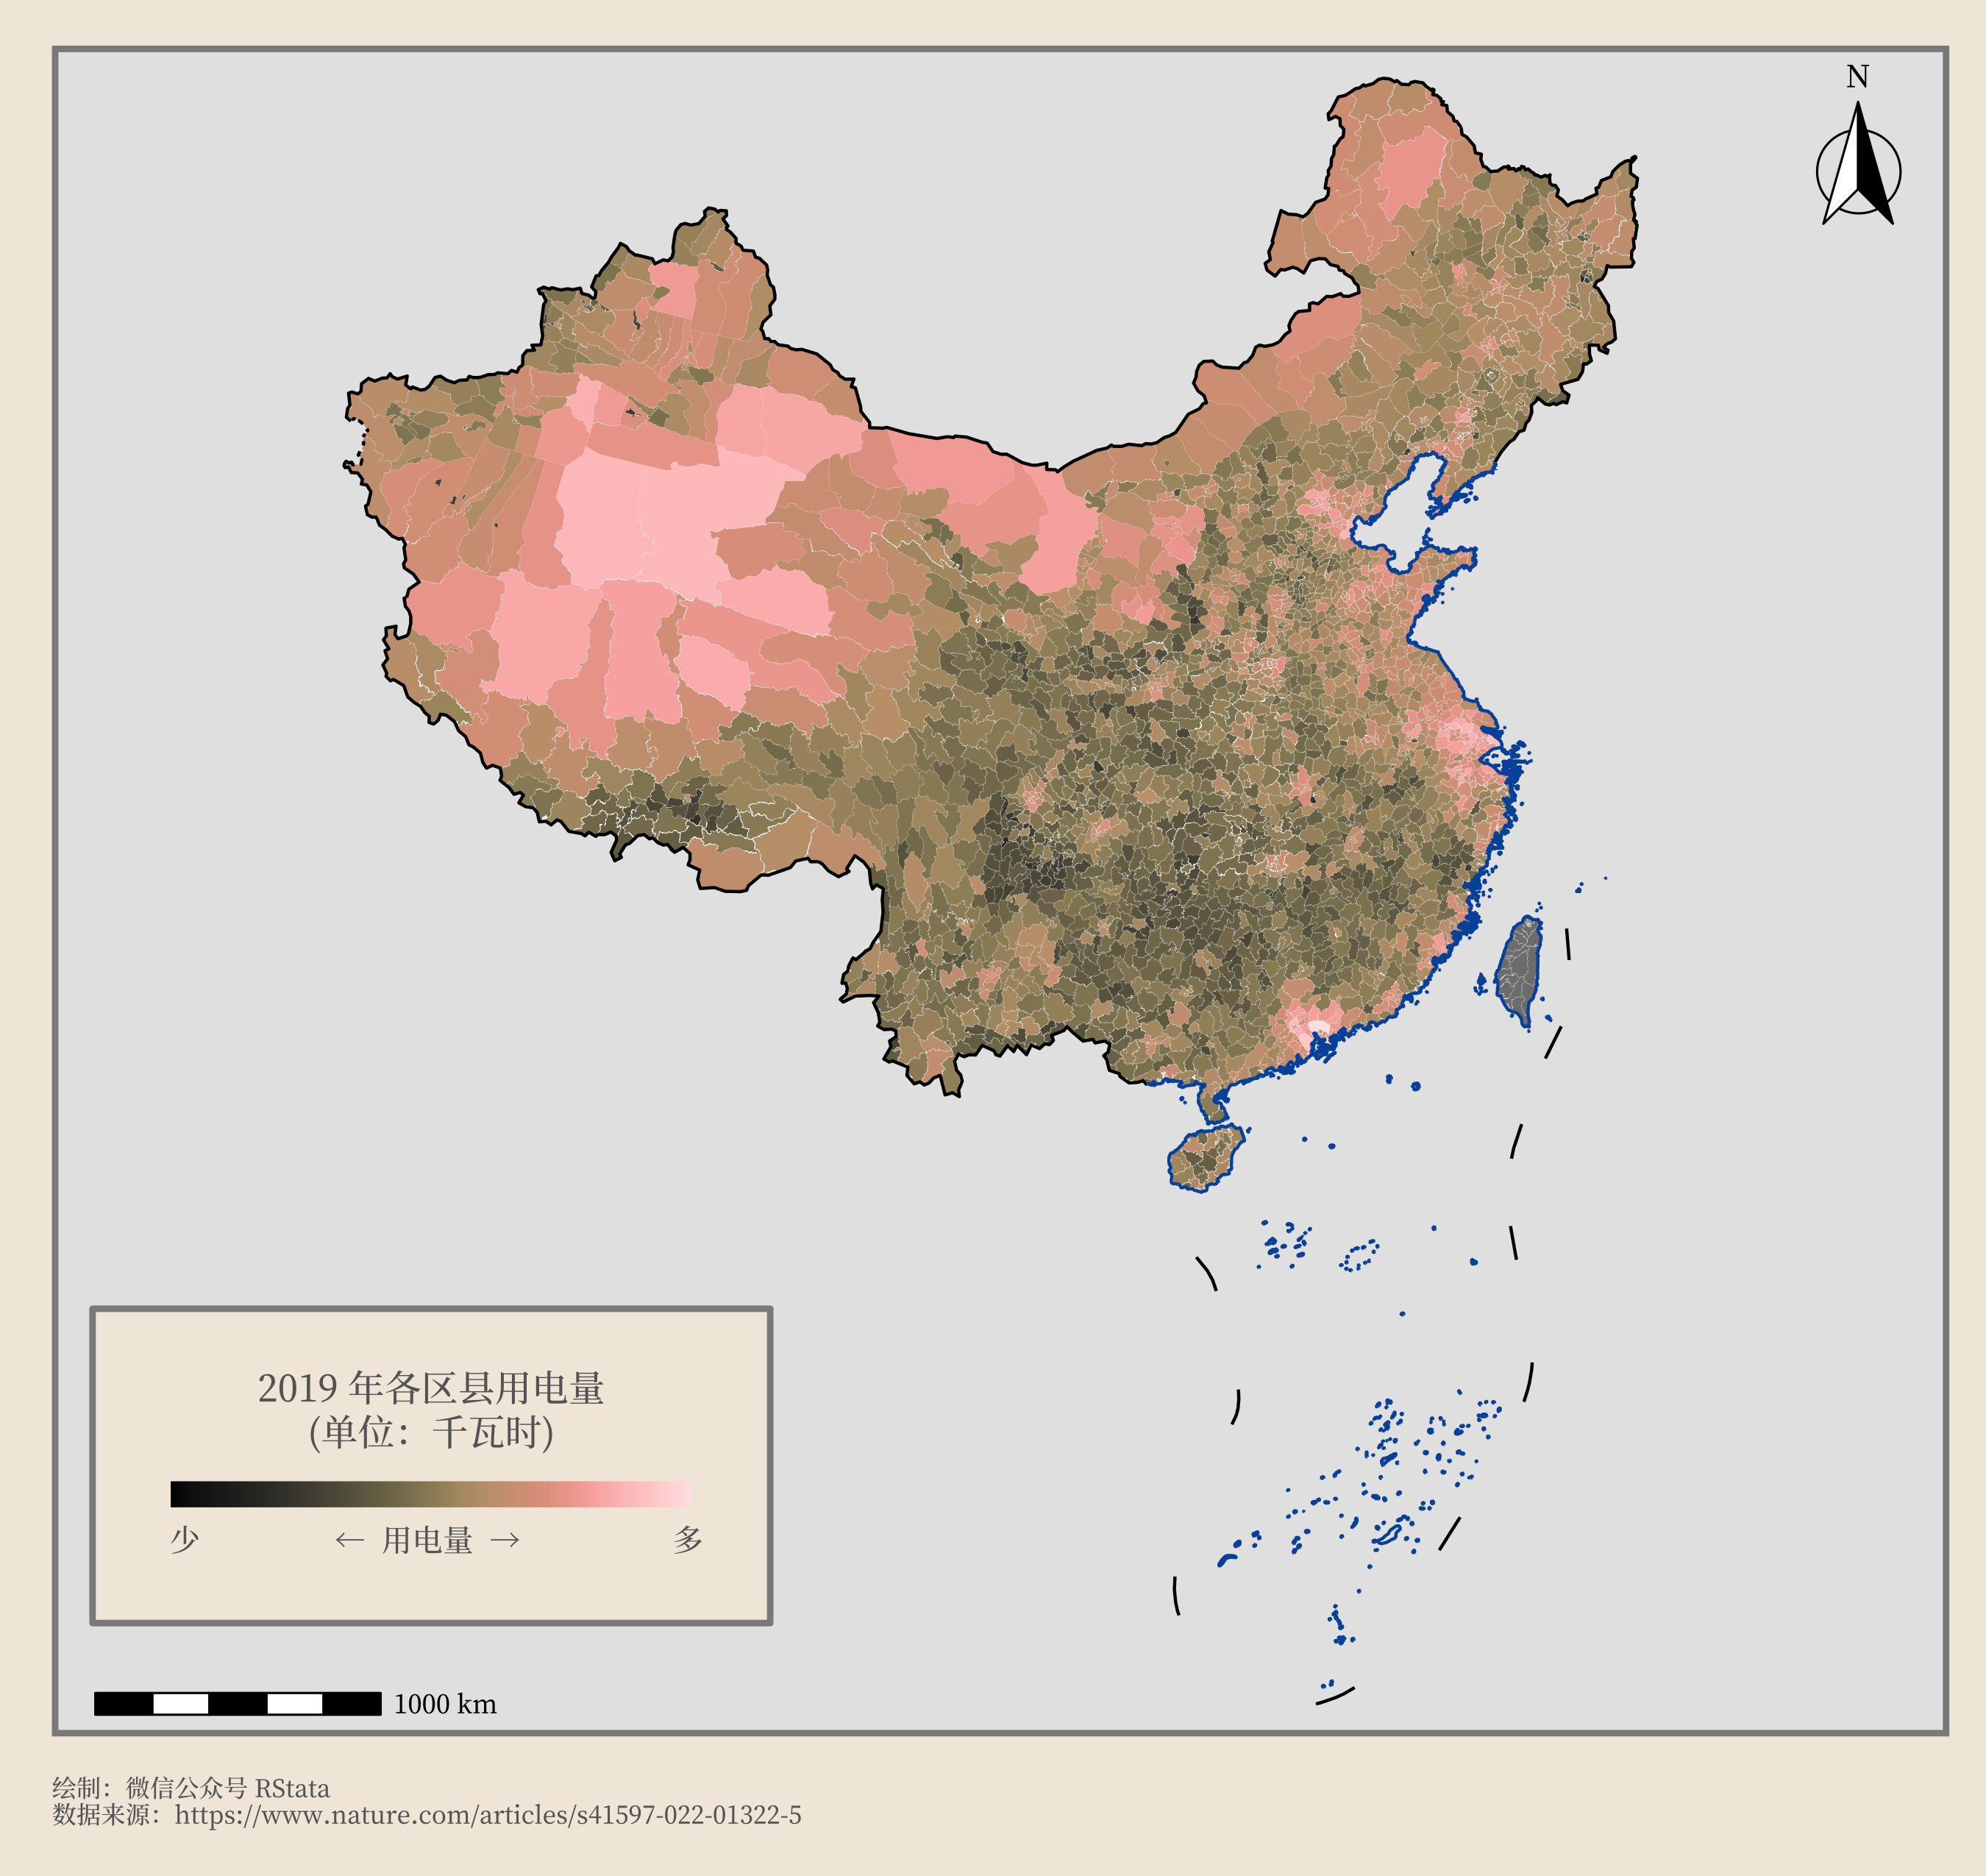 2019 年中国各区县用电量分布